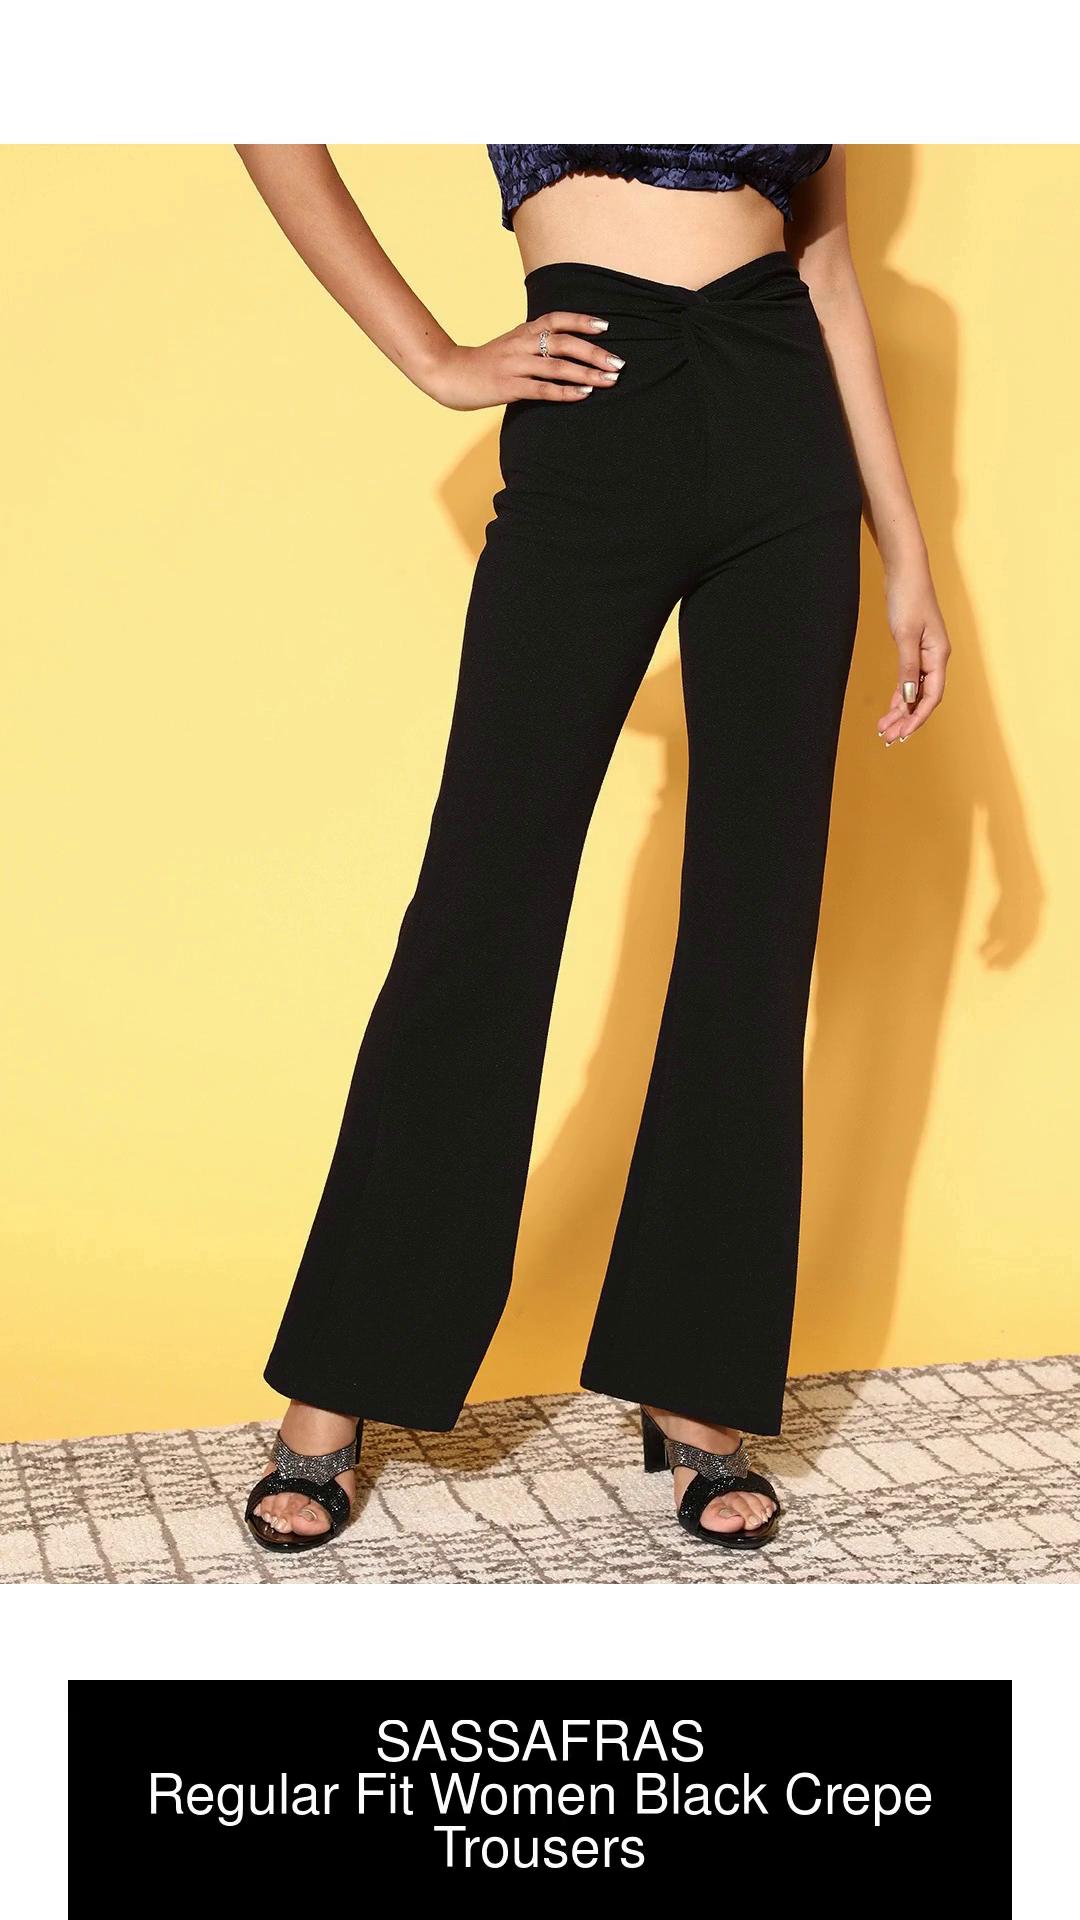 SASSAFRAS Regular Fit Women Black Trousers - Buy SASSAFRAS Regular